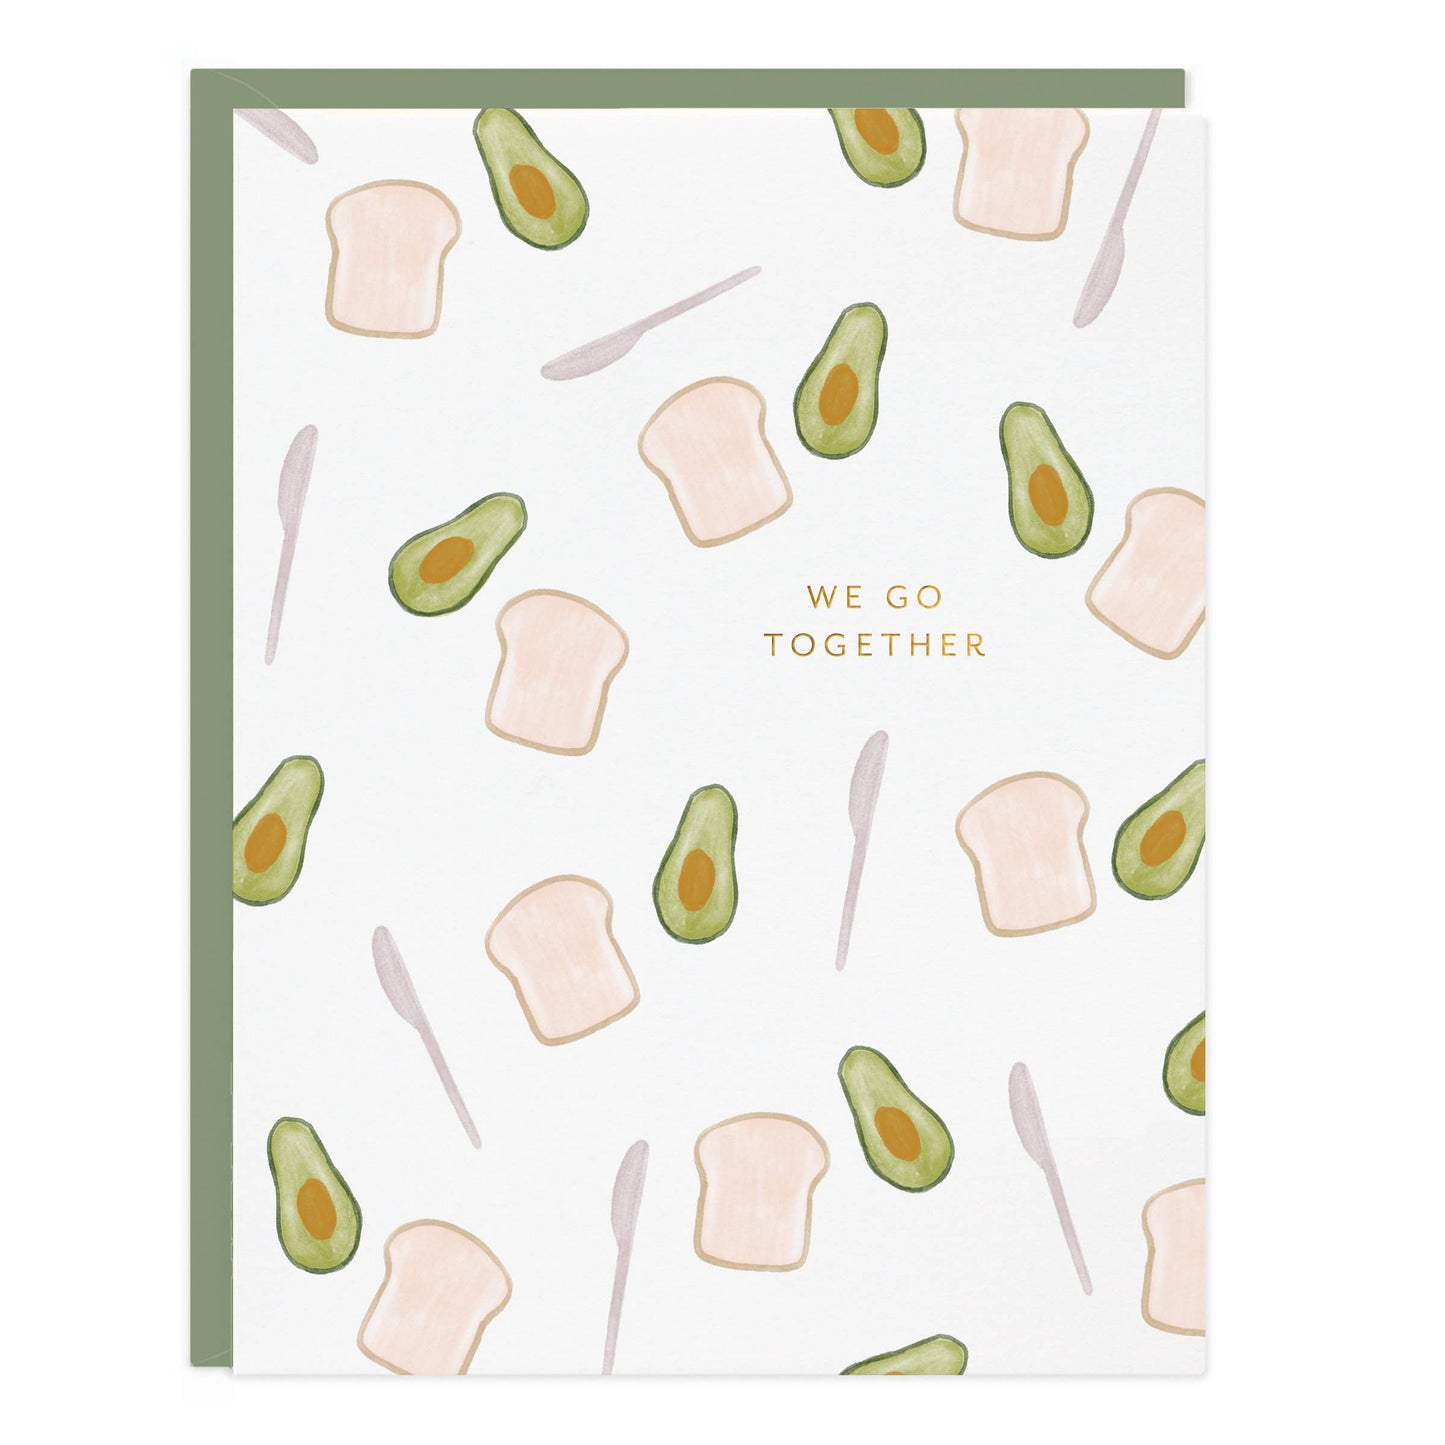 Avocado Toast Love Card by Ramona & Ruth